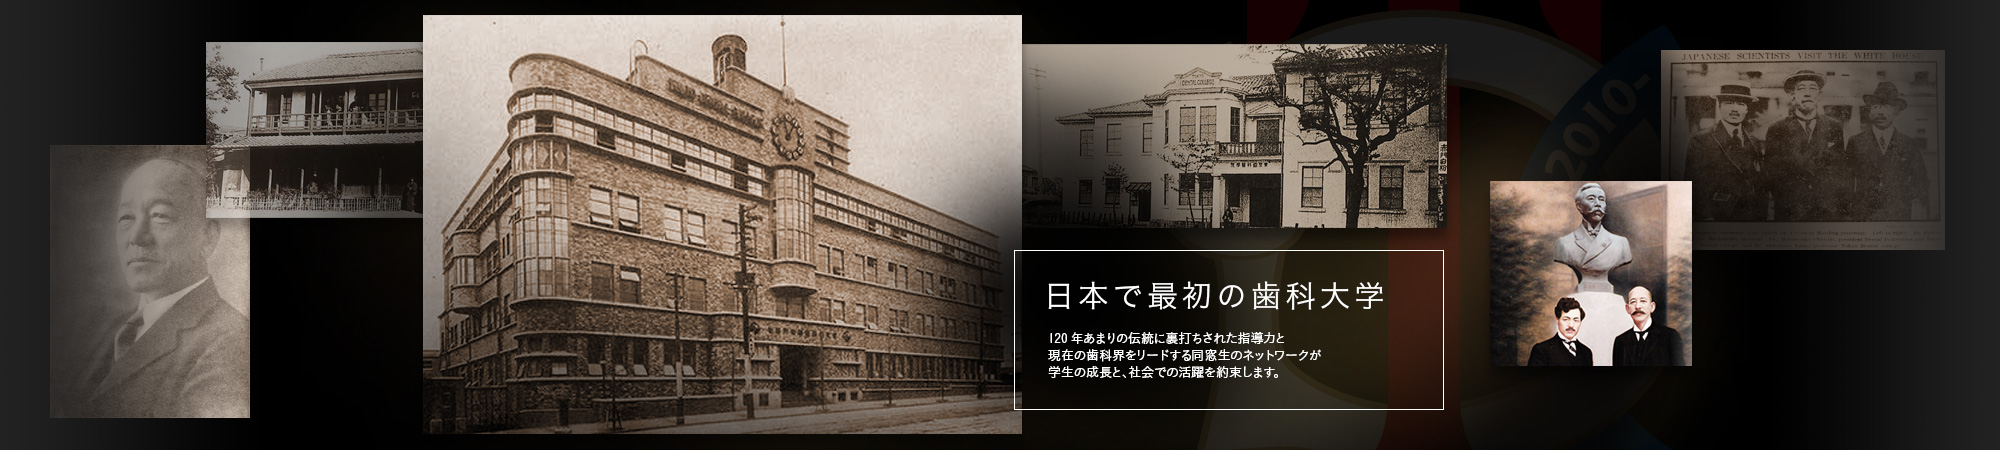 日本で最初の歯科大学